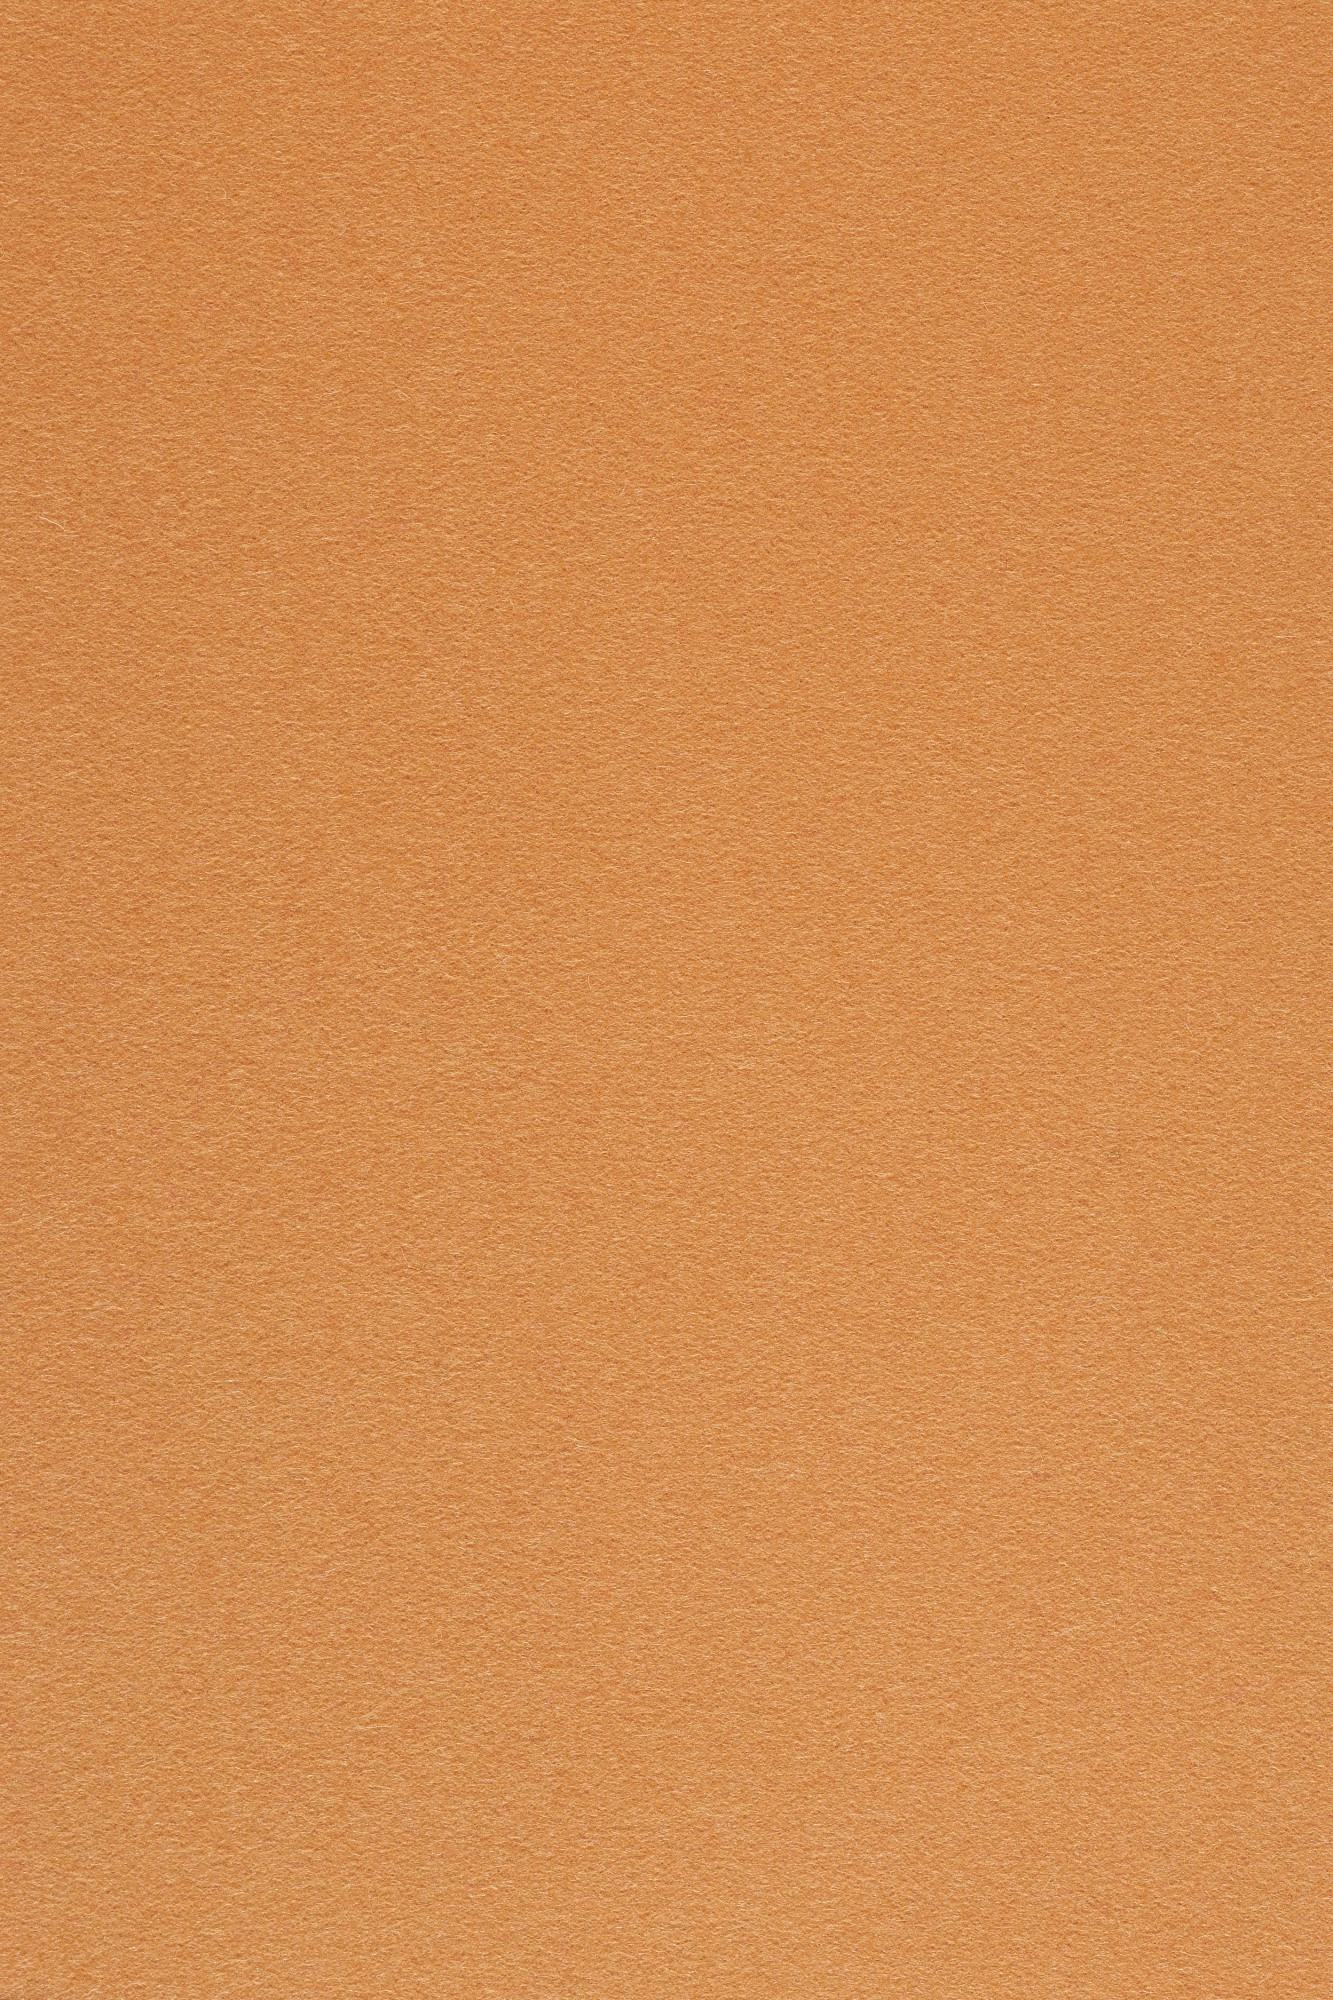 Fabric sample Divina 3 526 orange